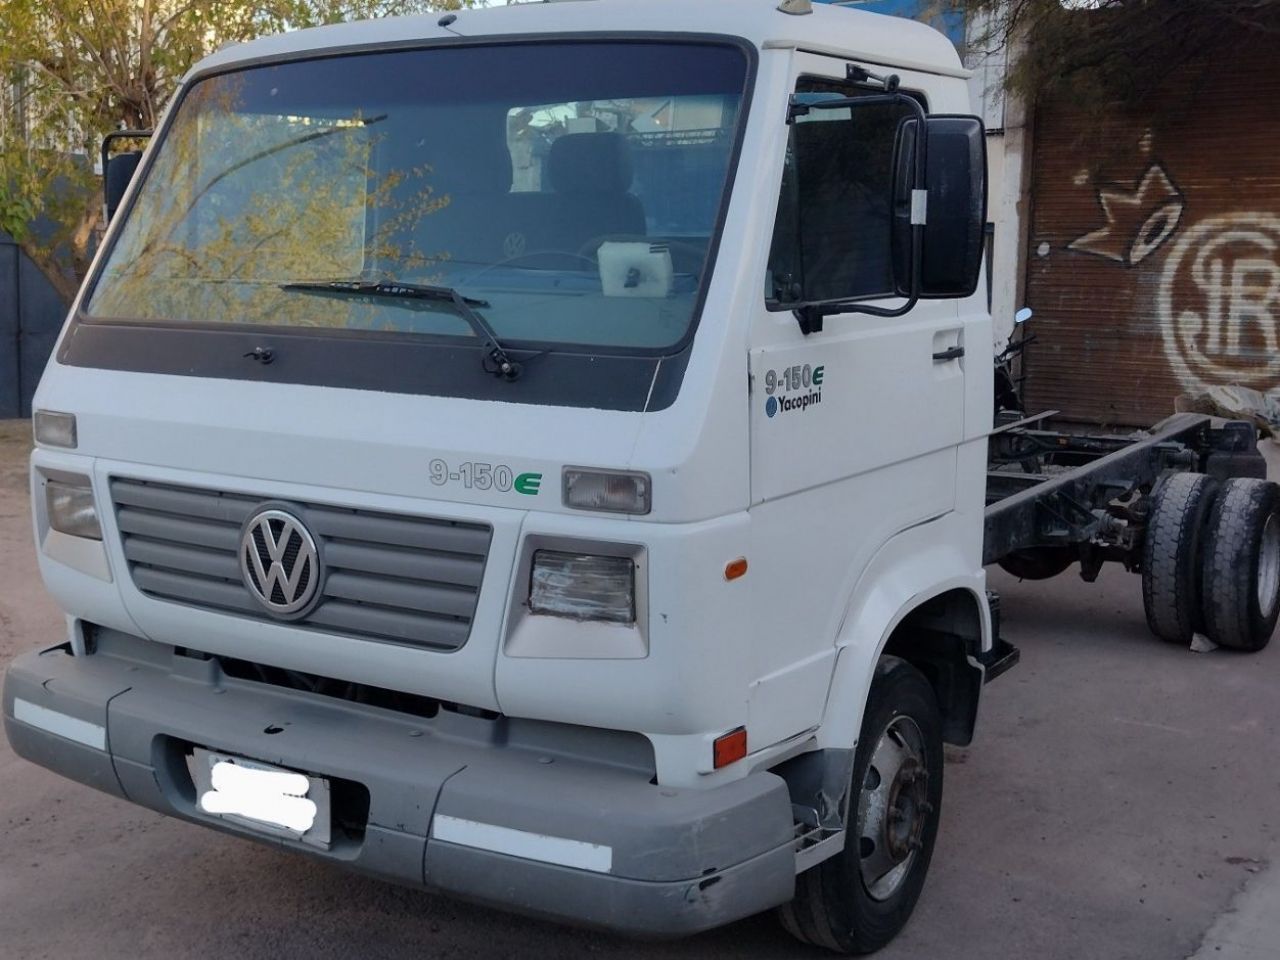 Volkswagen 9.150 Usado en Mendoza, deRuedas